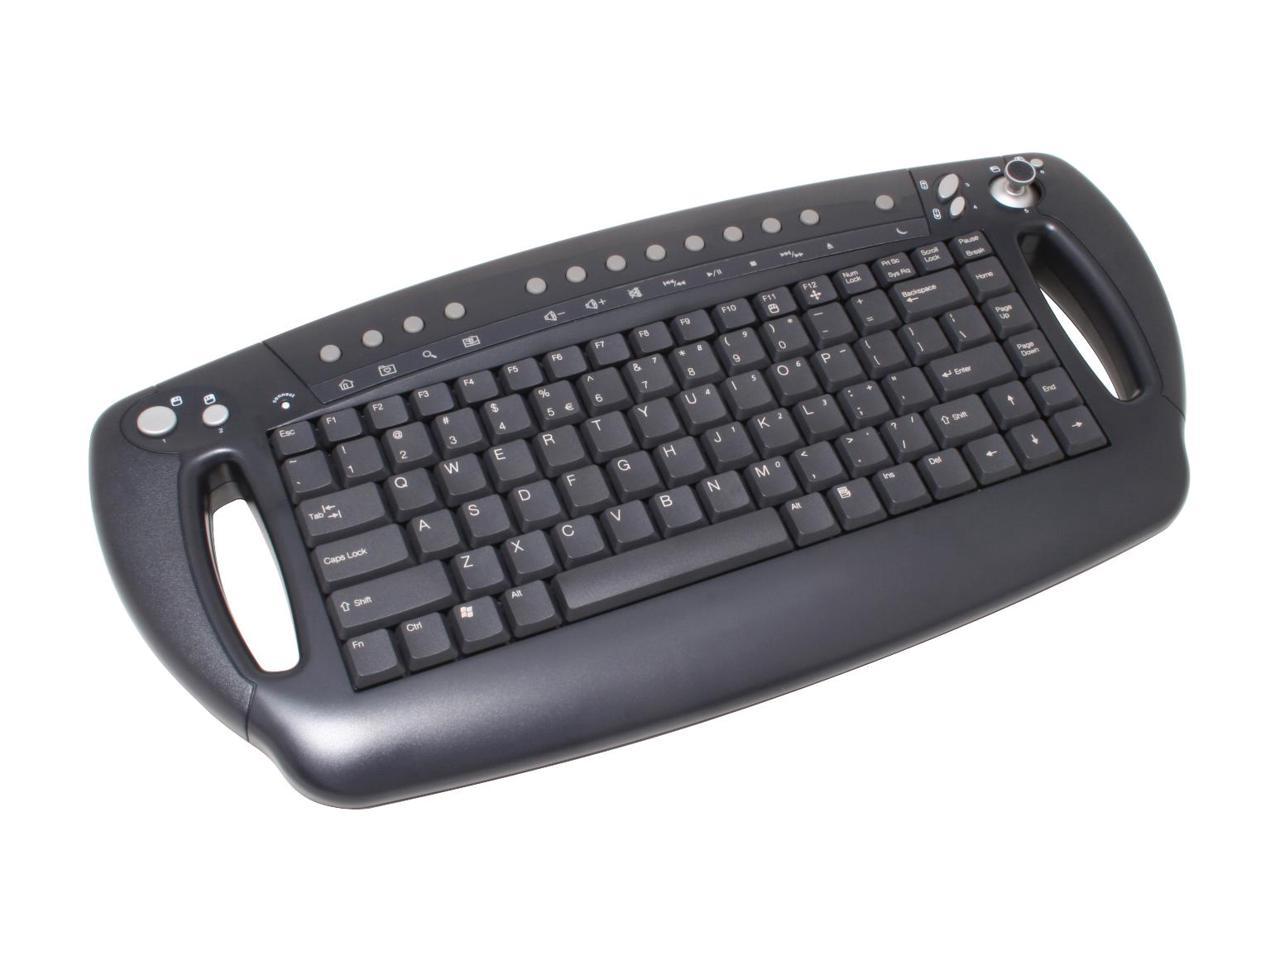 btc wireless keyboard